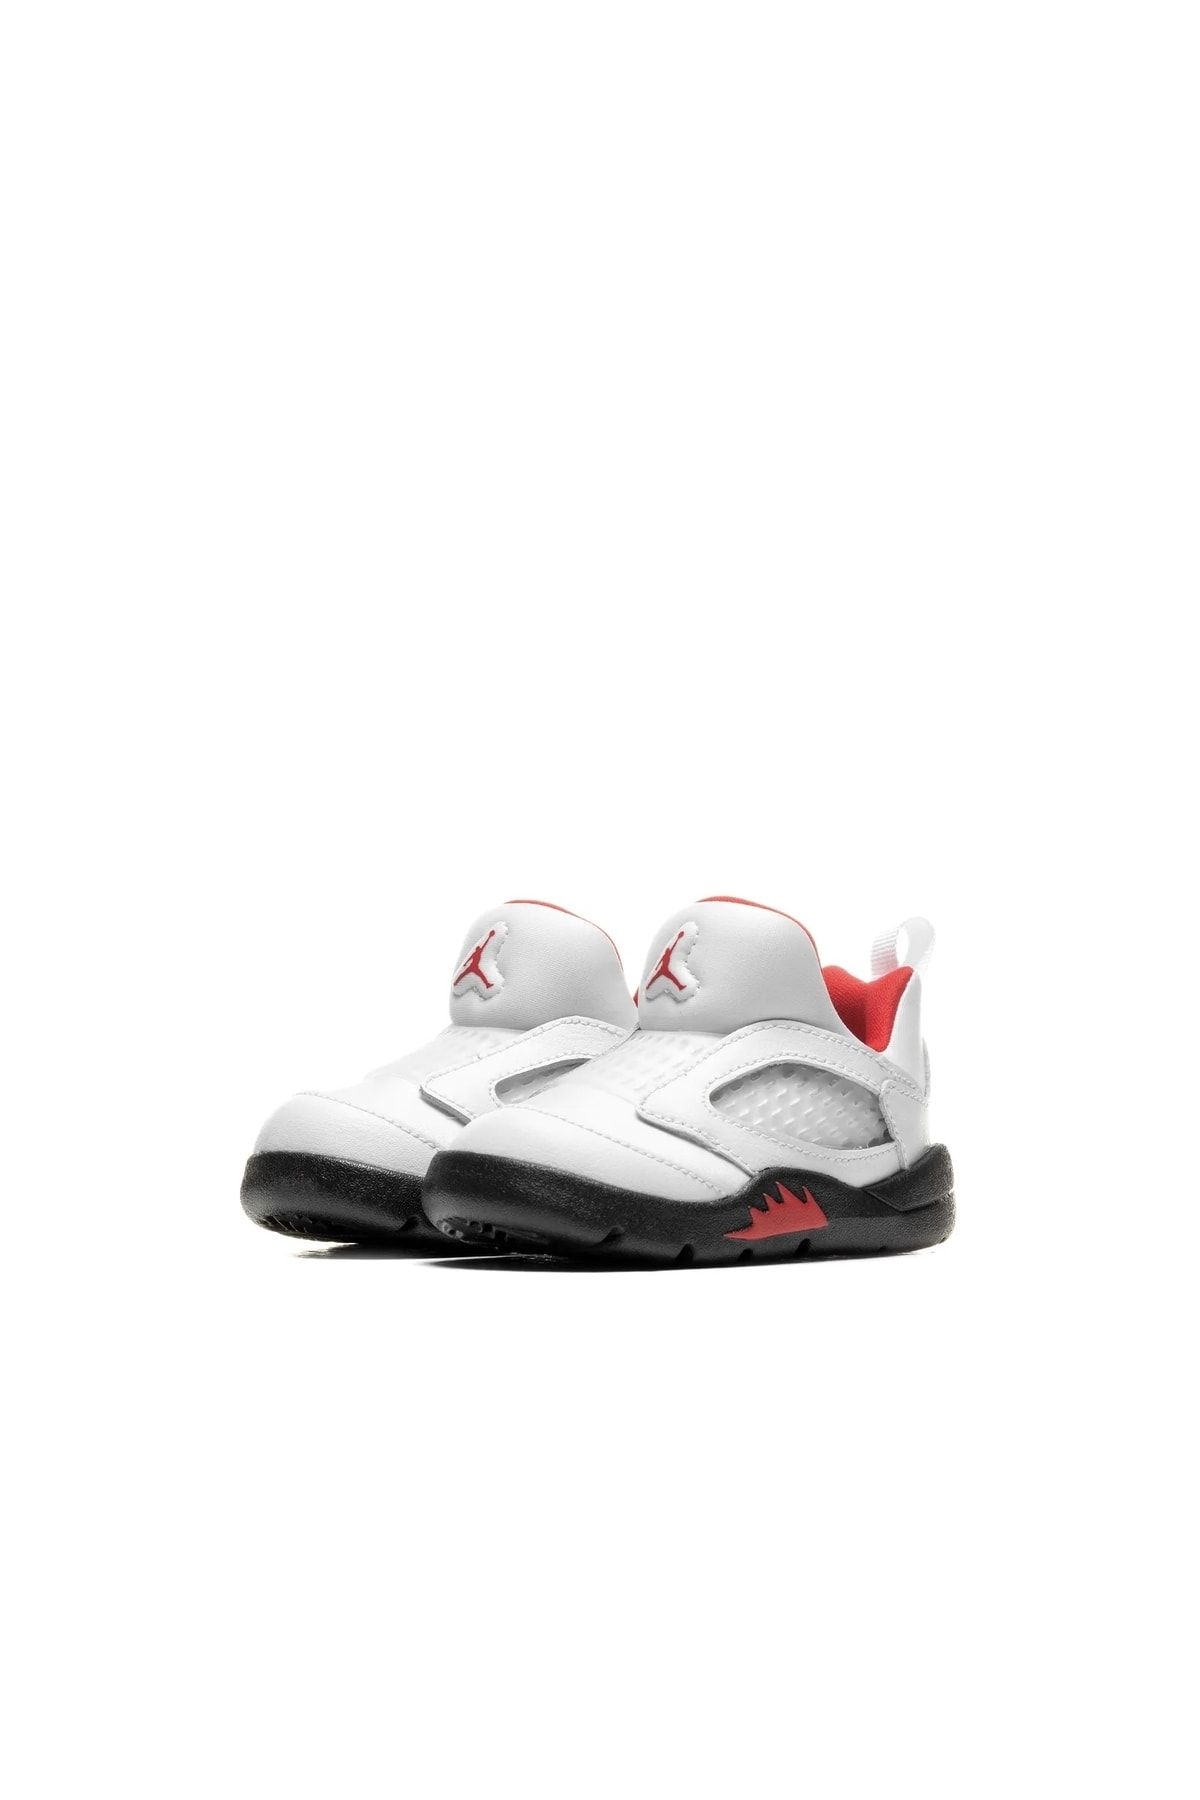 Nike Jordan 5 Retro Little Flex Spor Ayakkabı